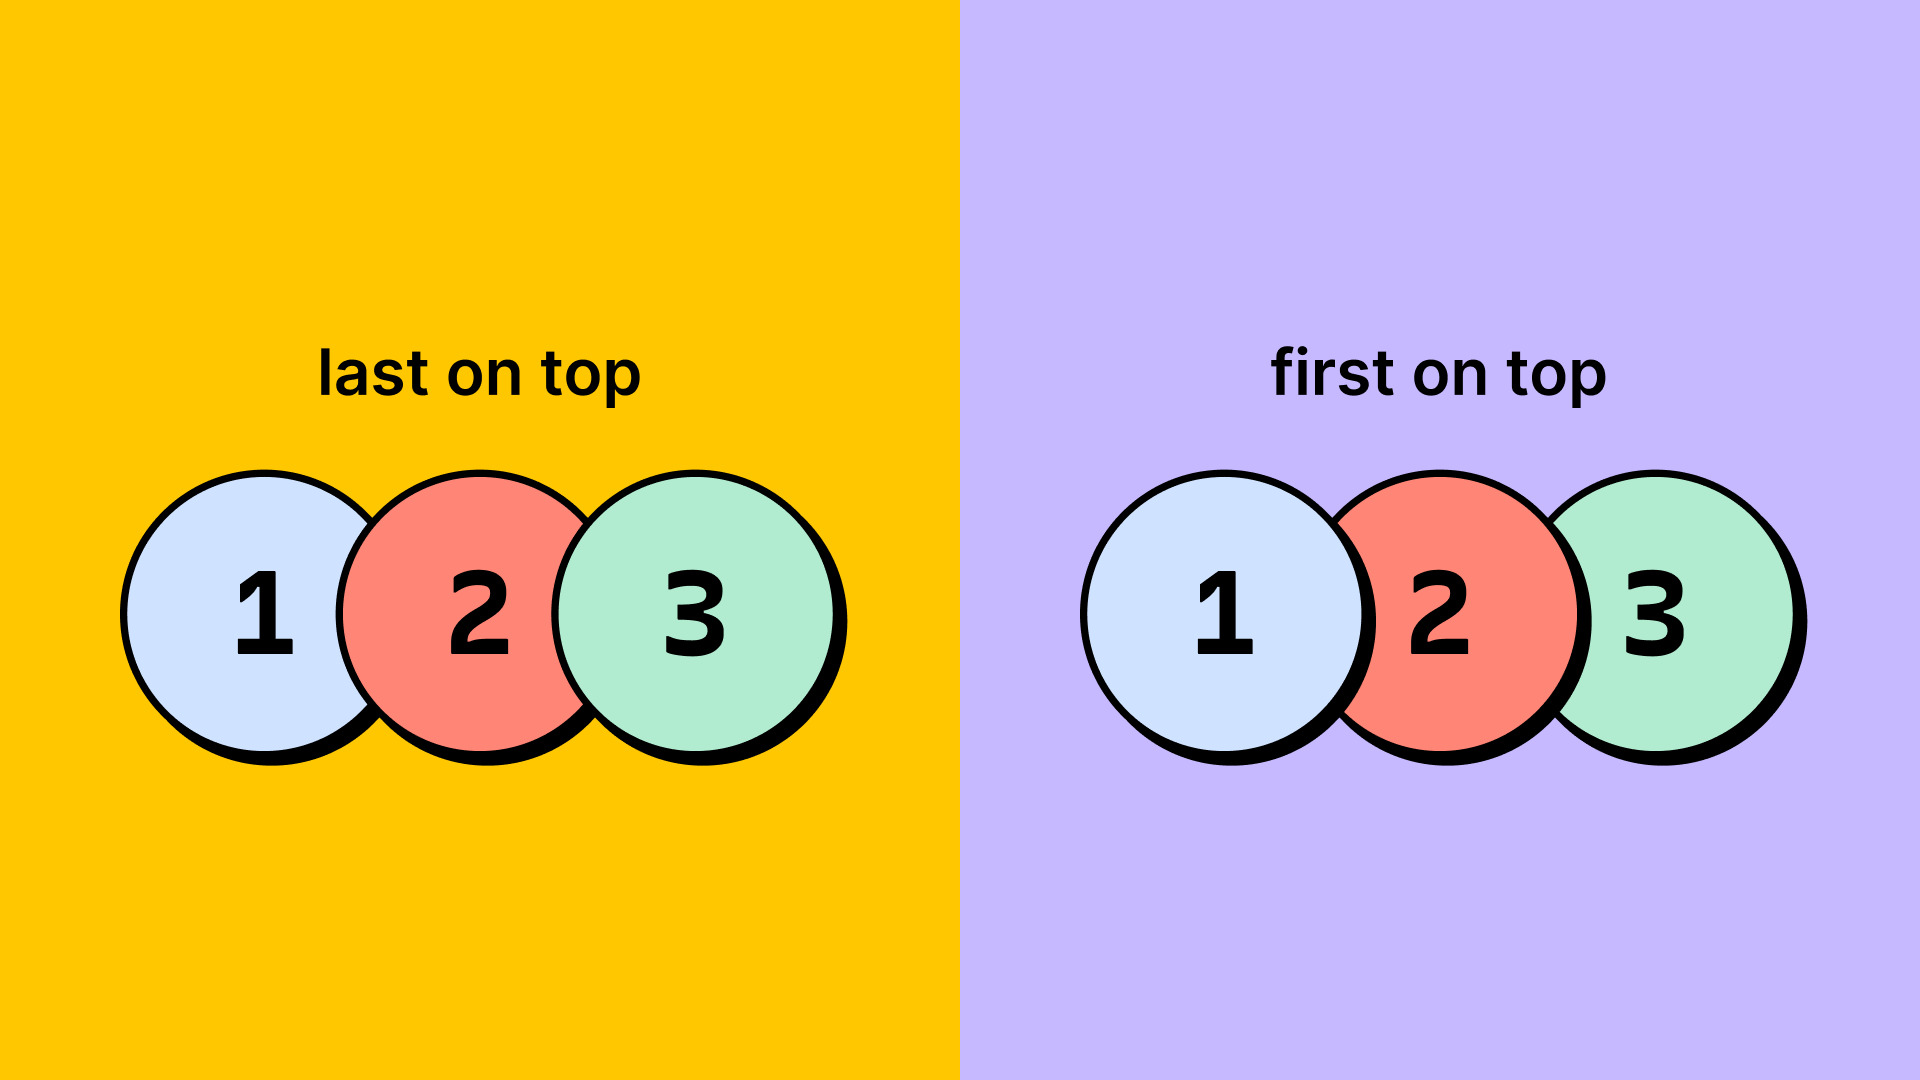 Imagem contendo a diferença entre as duas opções que há para utilizar o Canvas stacking. Na esquerda há o “last on top” e na direita o “first on top”.